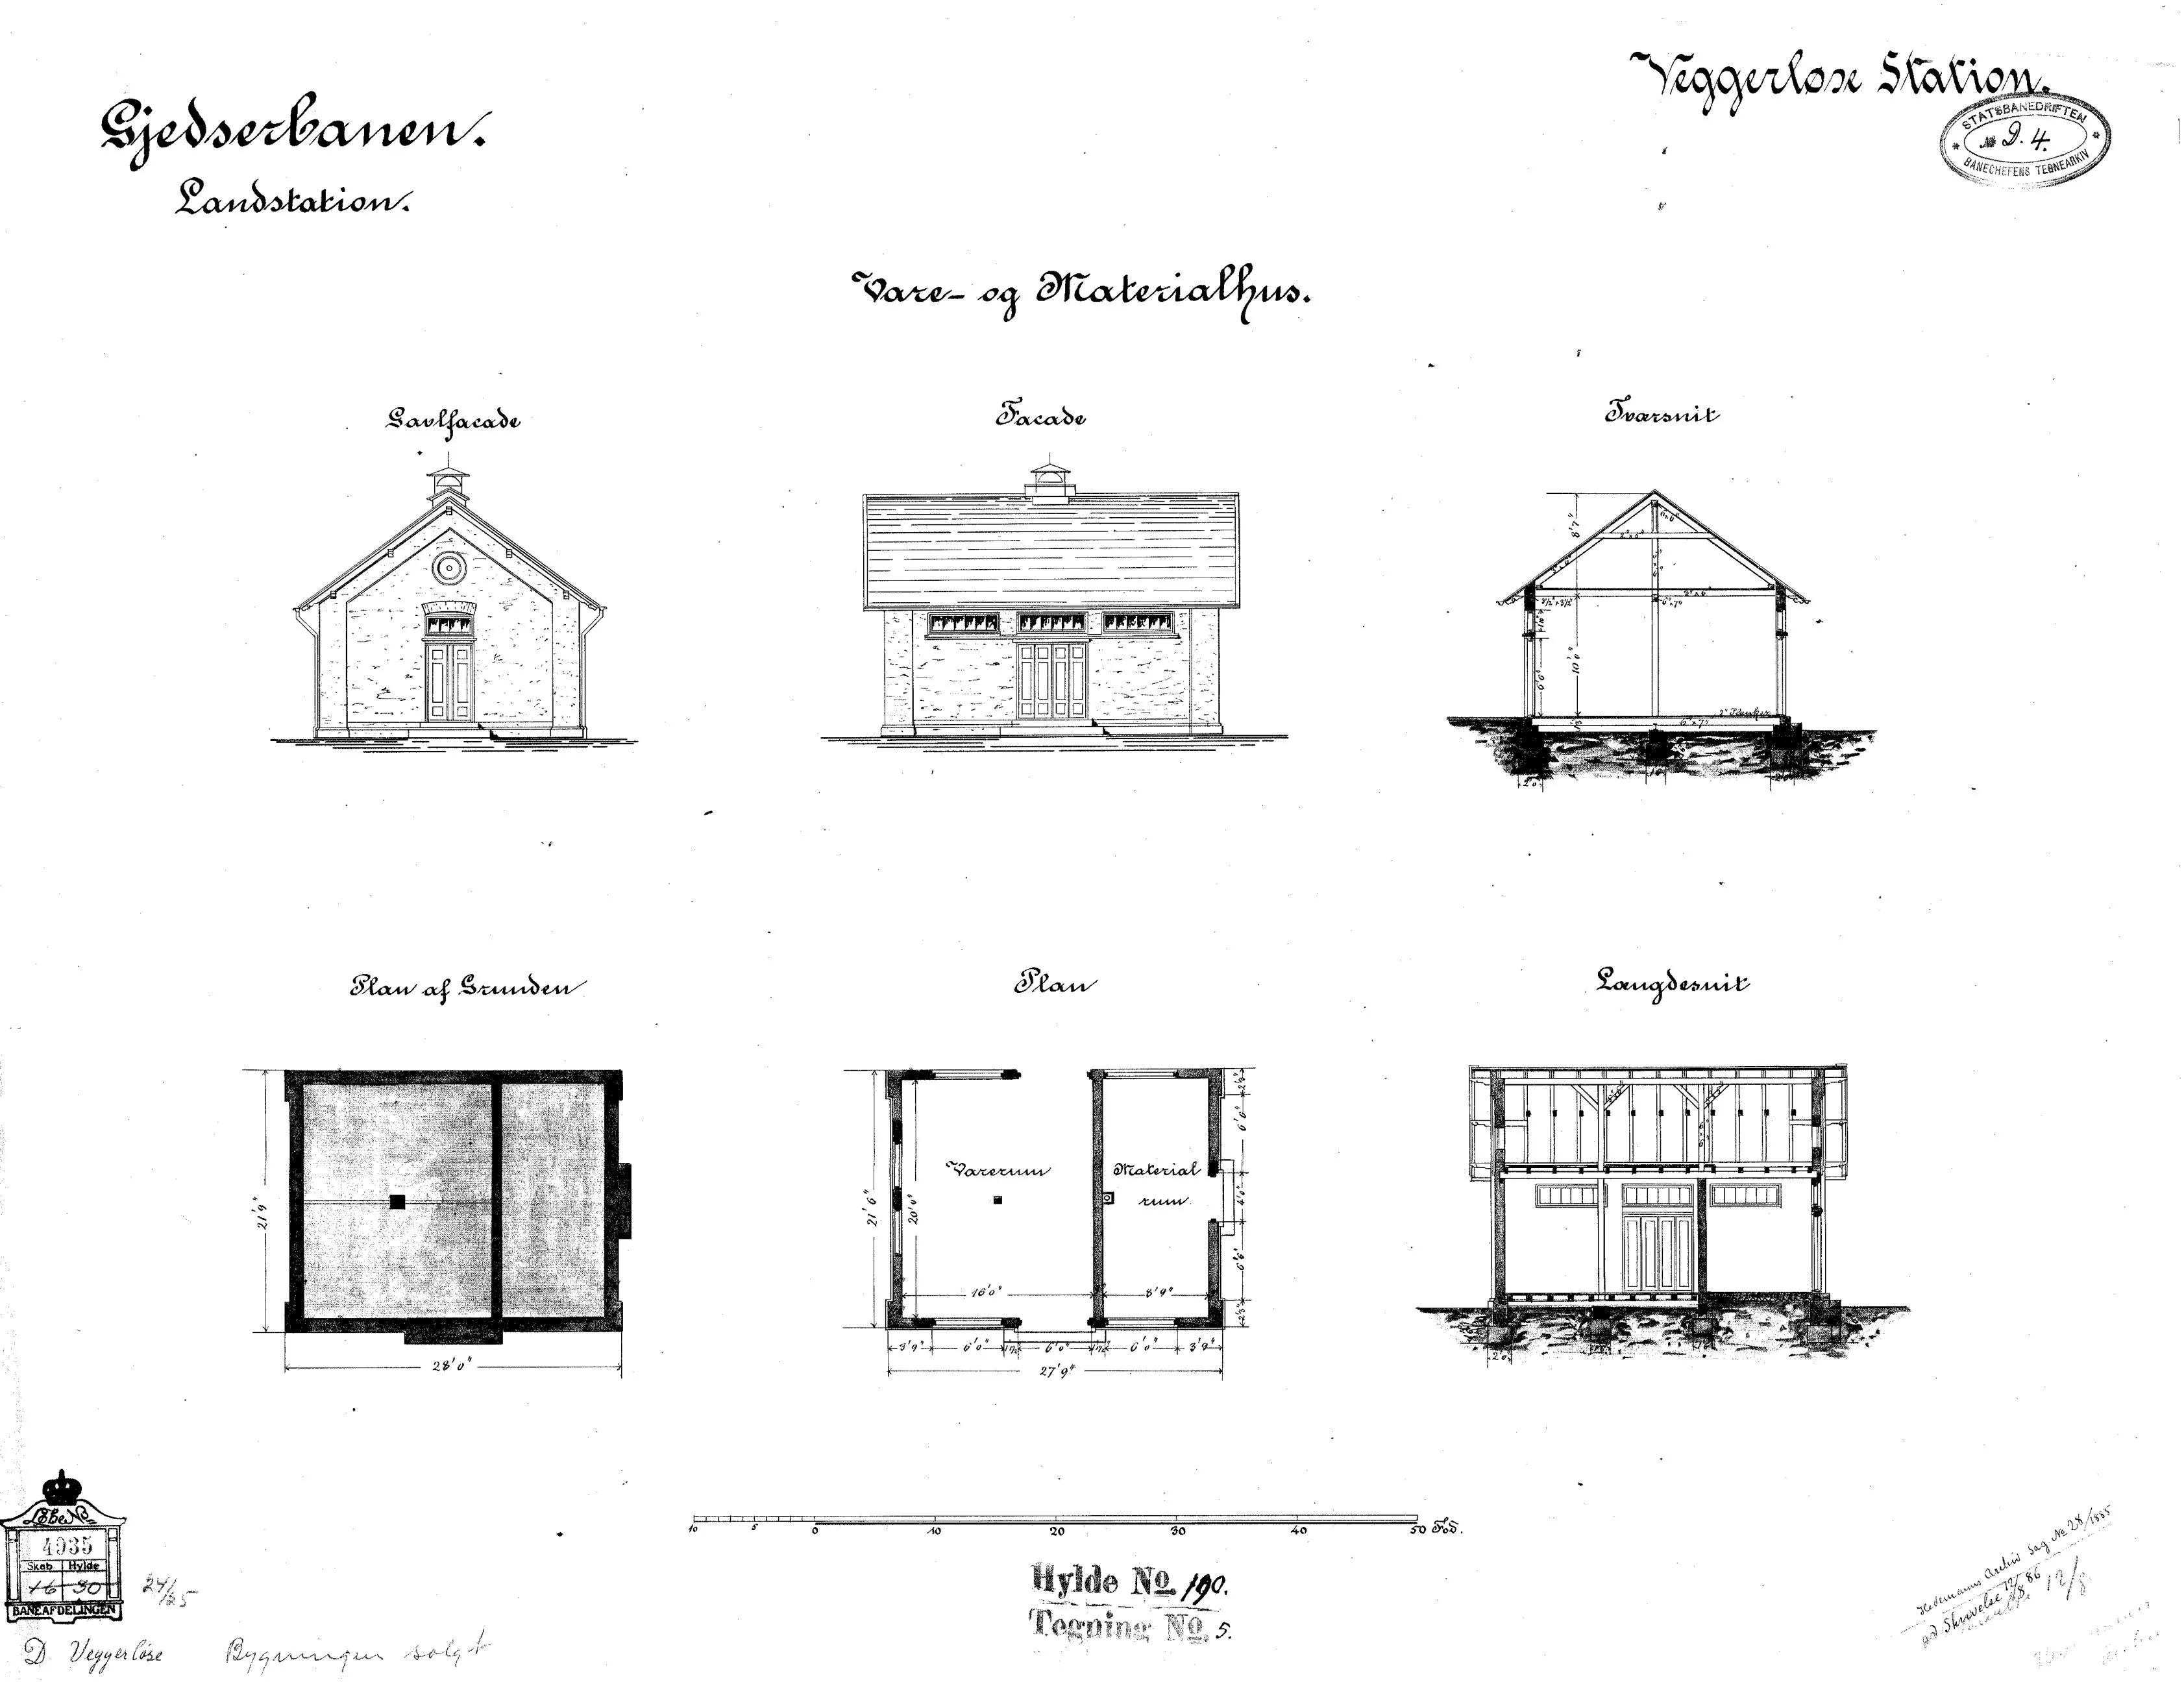 Tegning af Vare- og materialhus ved Væggerløse Station.